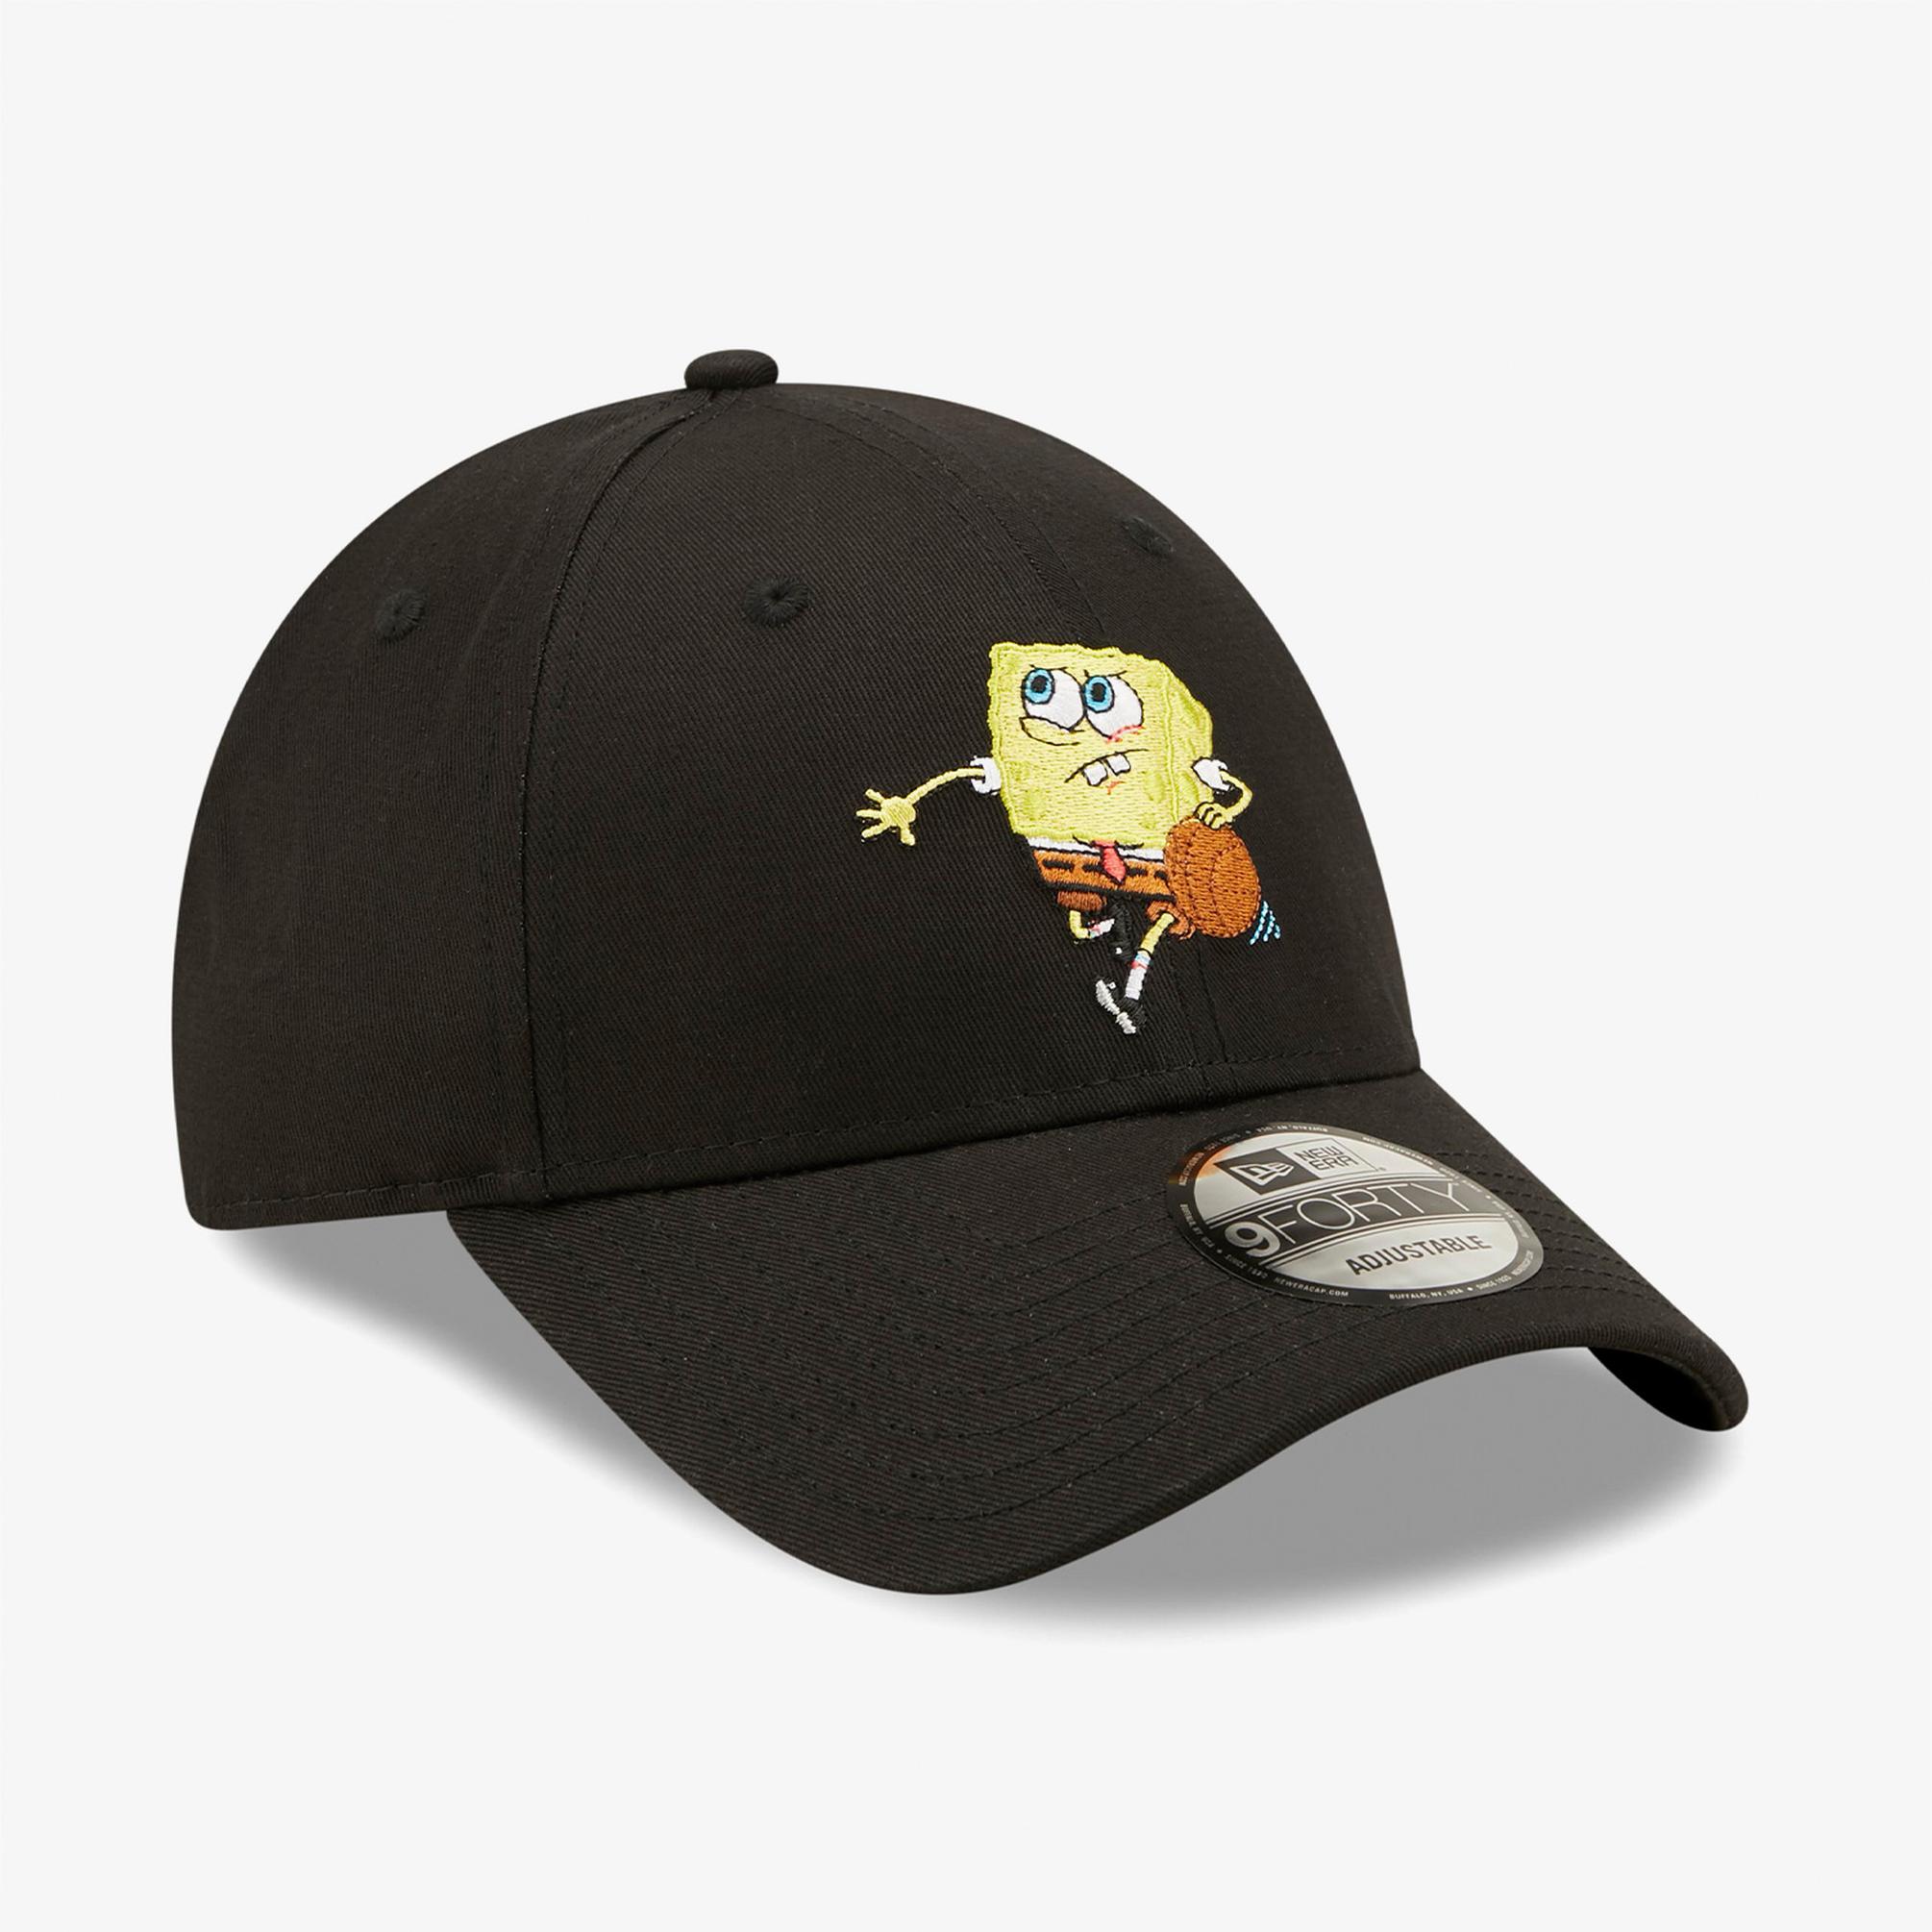  New Era Sporty Sponge Bob Siyah Unisex Şapka